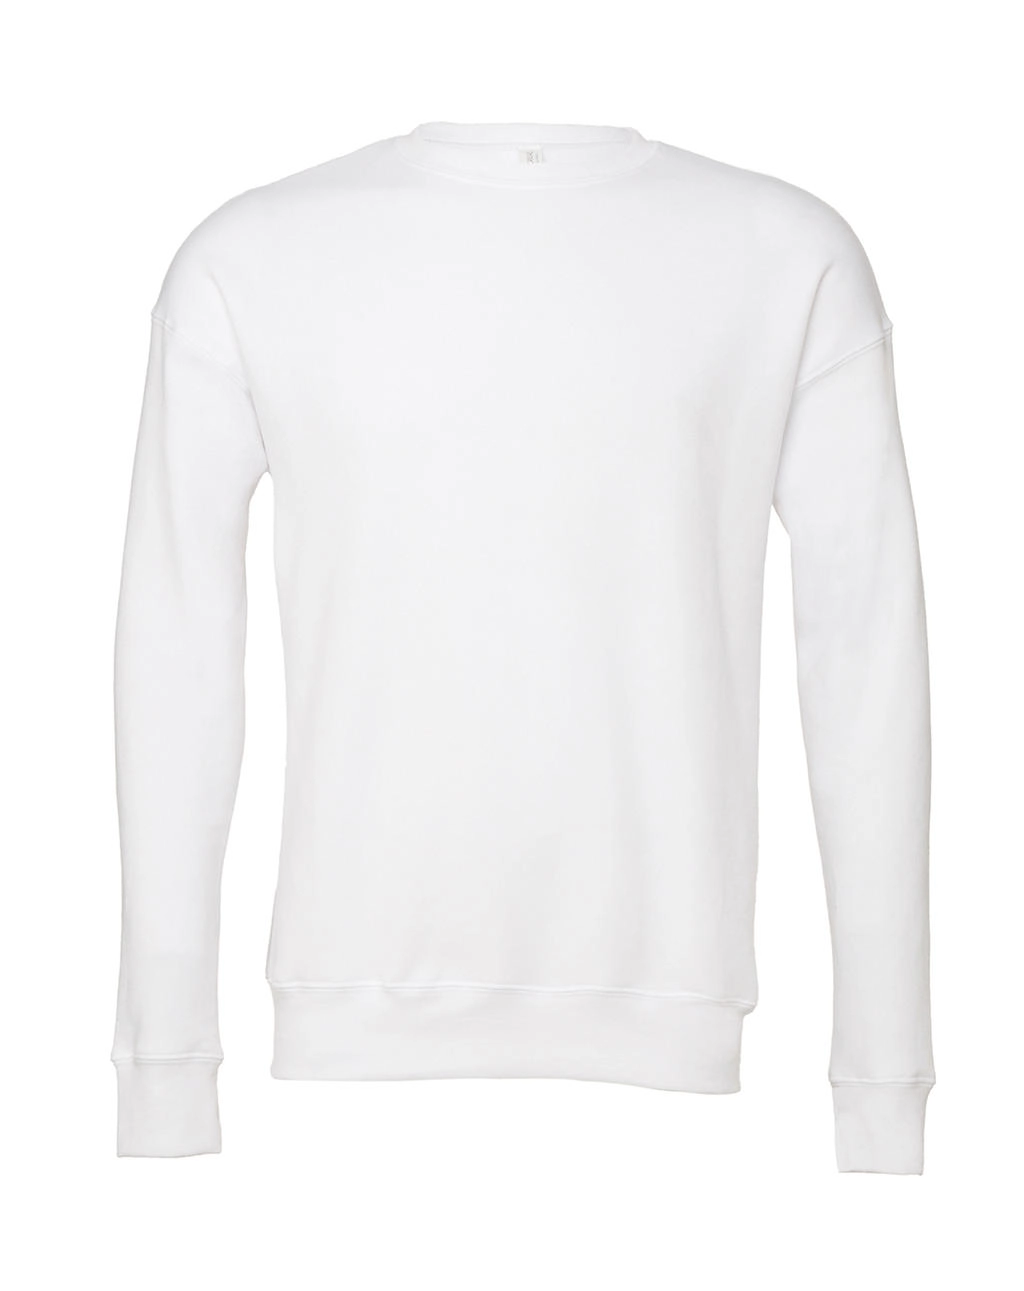 Unisex Drop Shoulder Fleece zum Besticken und Bedrucken in der Farbe White mit Ihren Logo, Schriftzug oder Motiv.